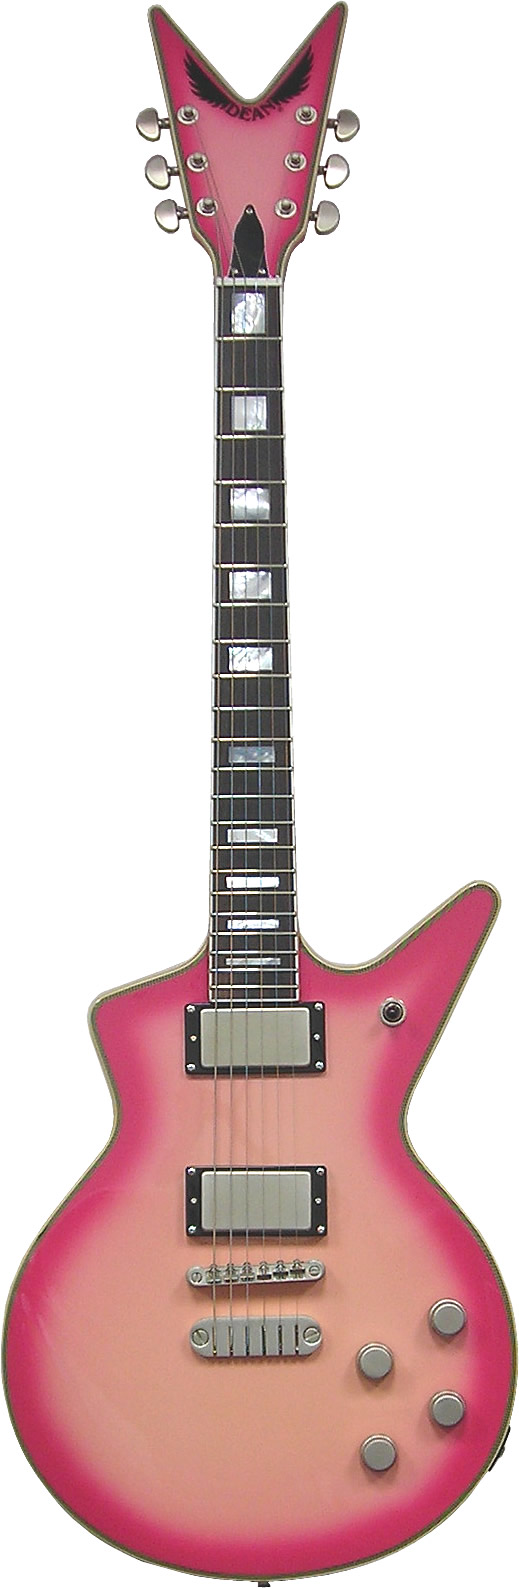 Cadillac 1980 - Pinkburst